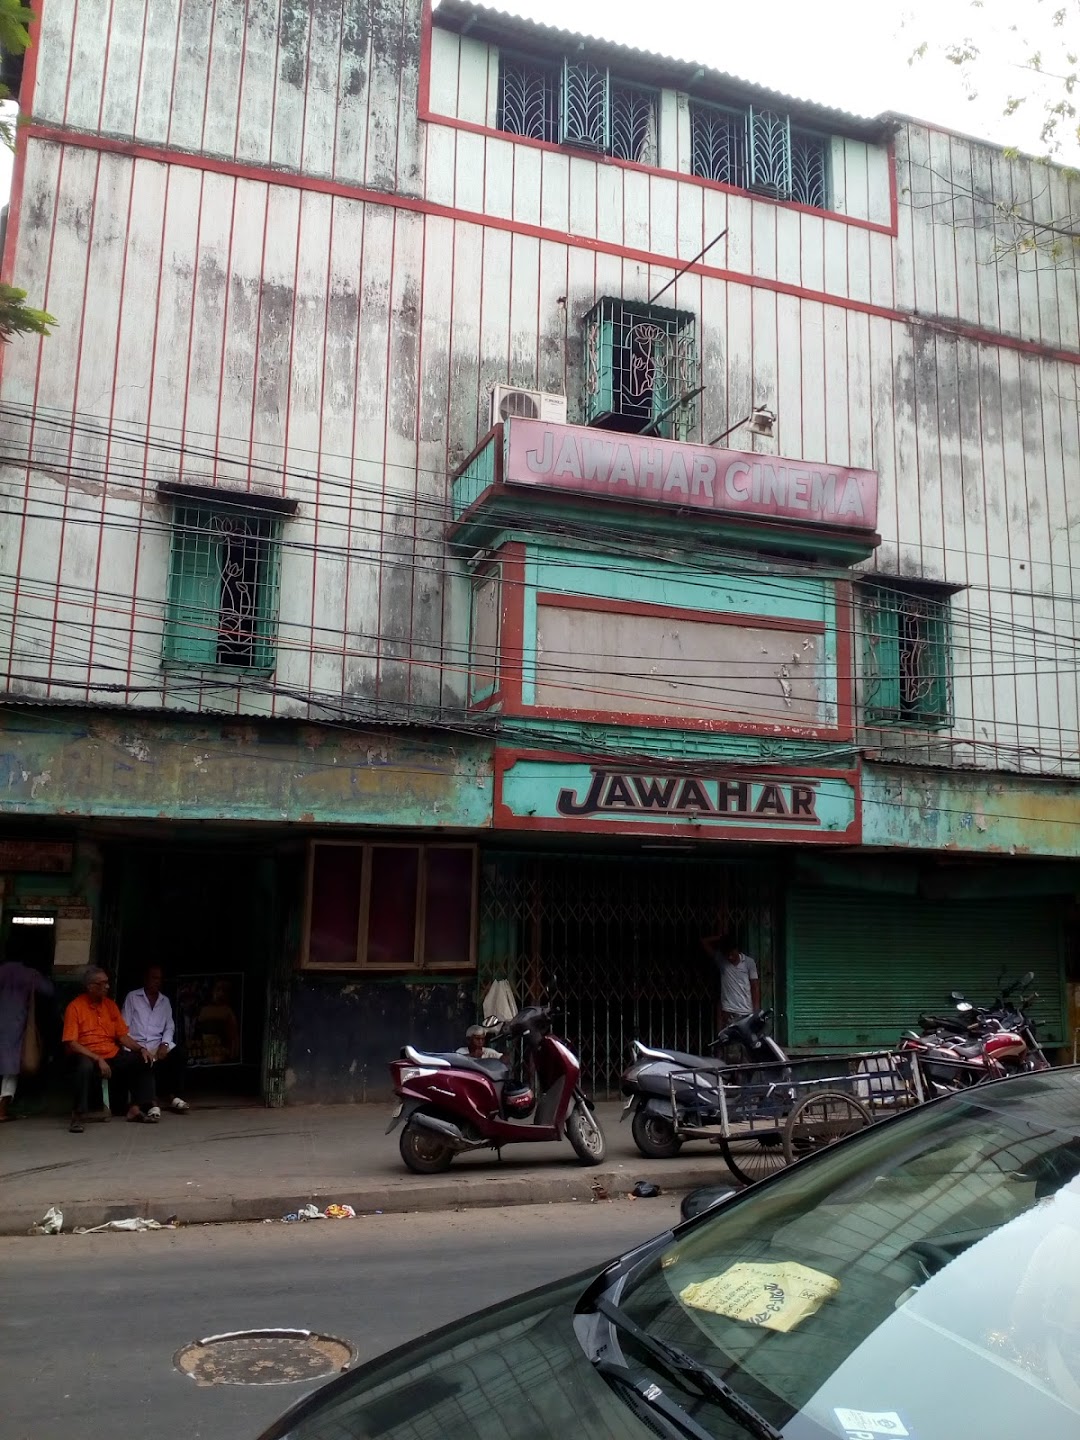 Jawahar Cinema